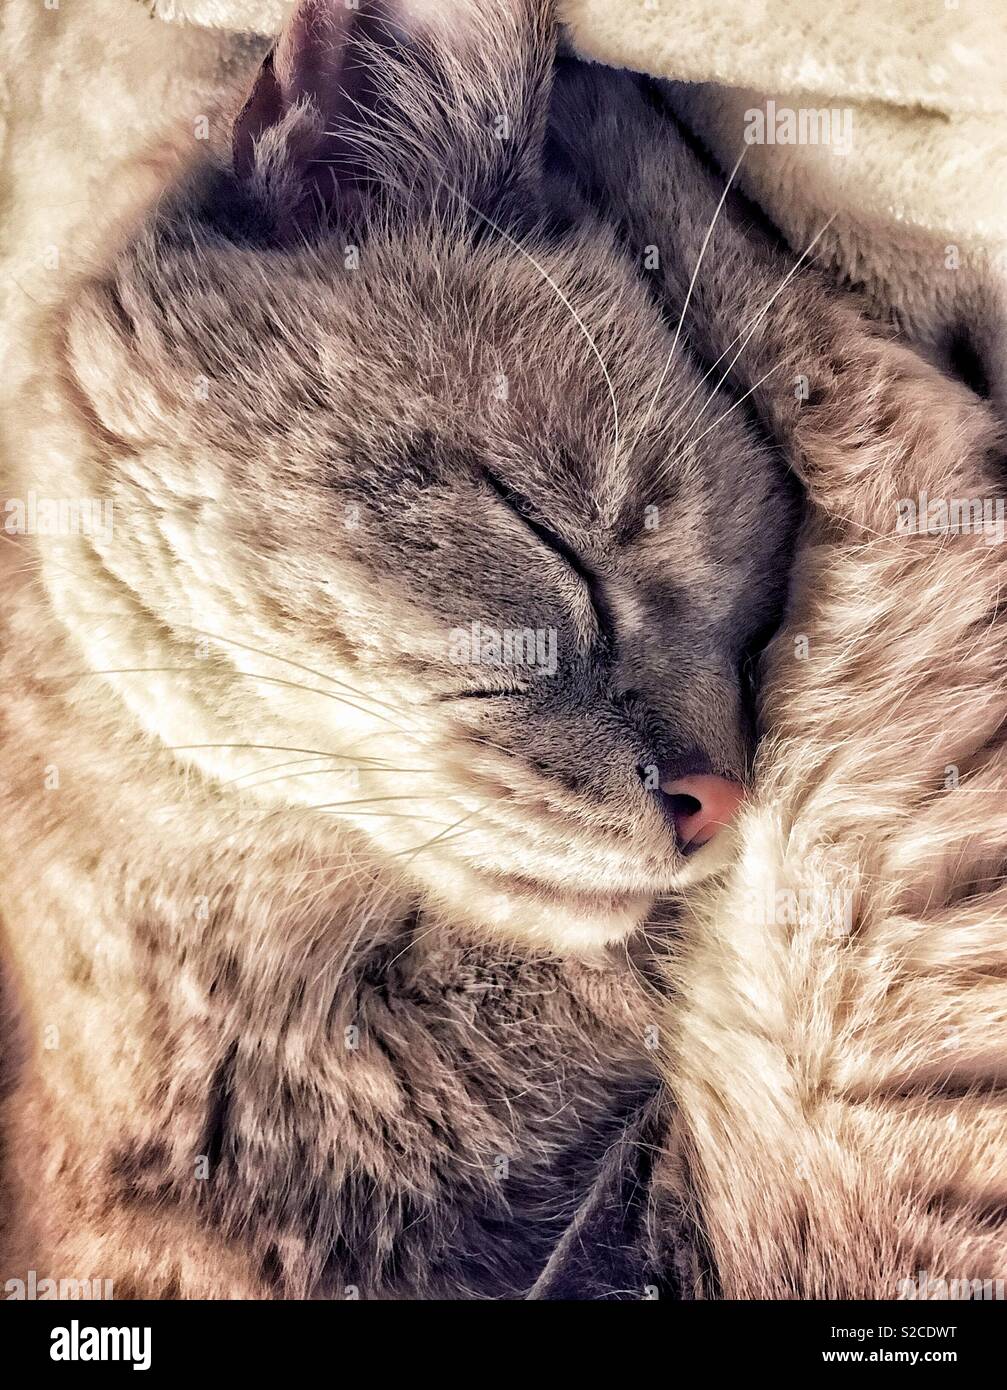 Lynx point gato siamés durmiendo en una pelota con la cabeza en las piernas Foto de stock